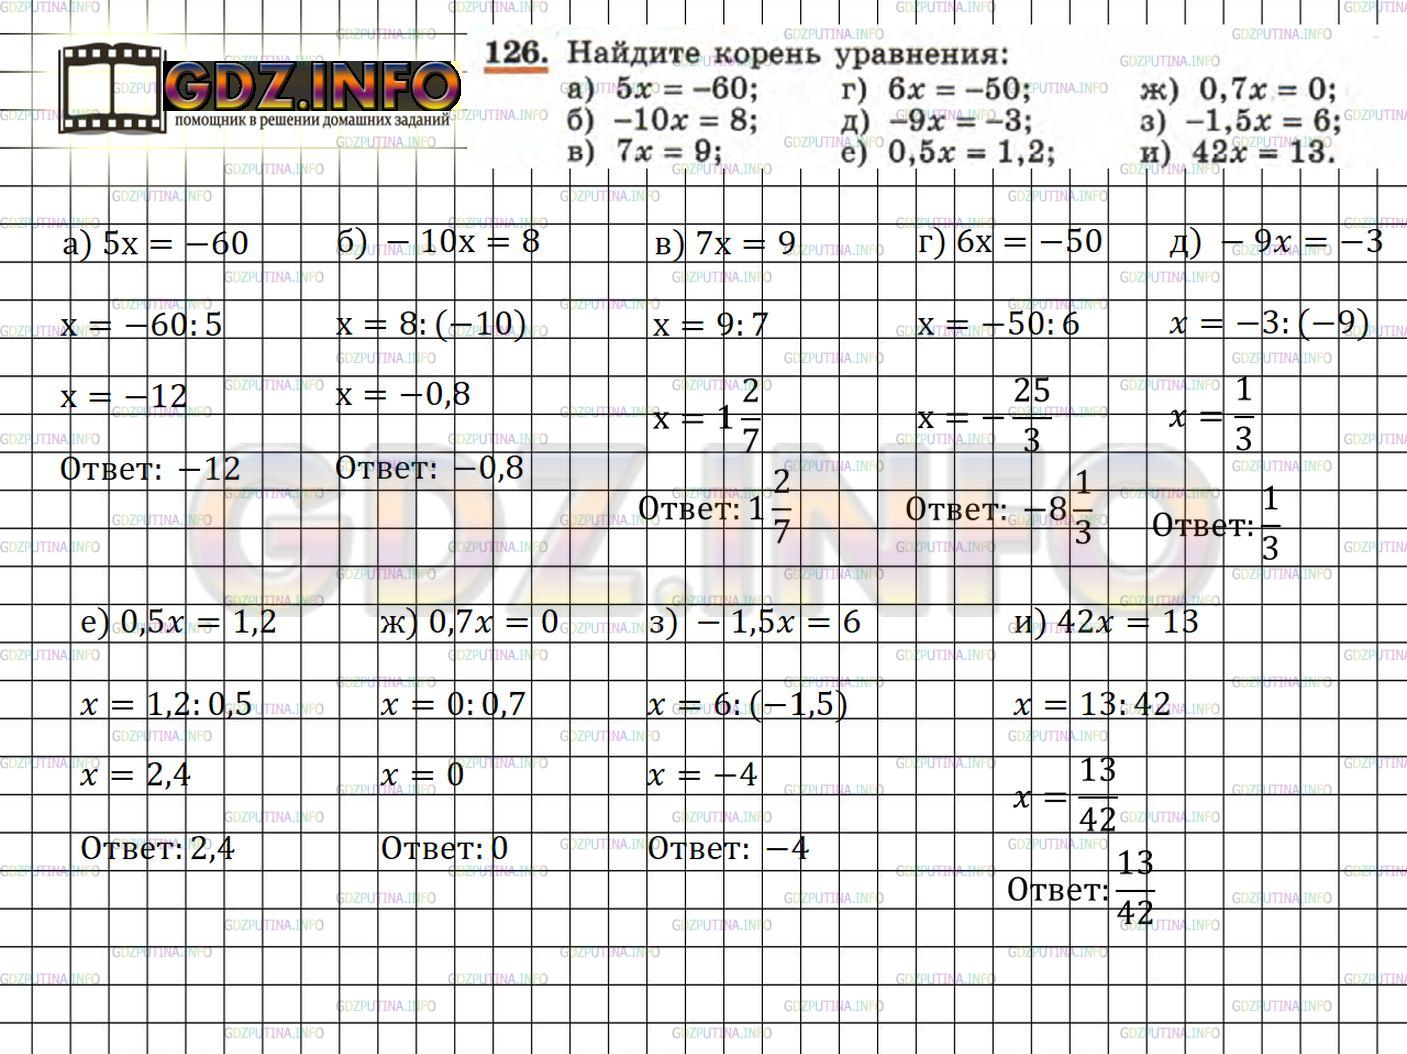 Фото решения 5: Номер задания №126 из ГДЗ по Алгебре 7 класс: Макарычев Ю.Н. г.